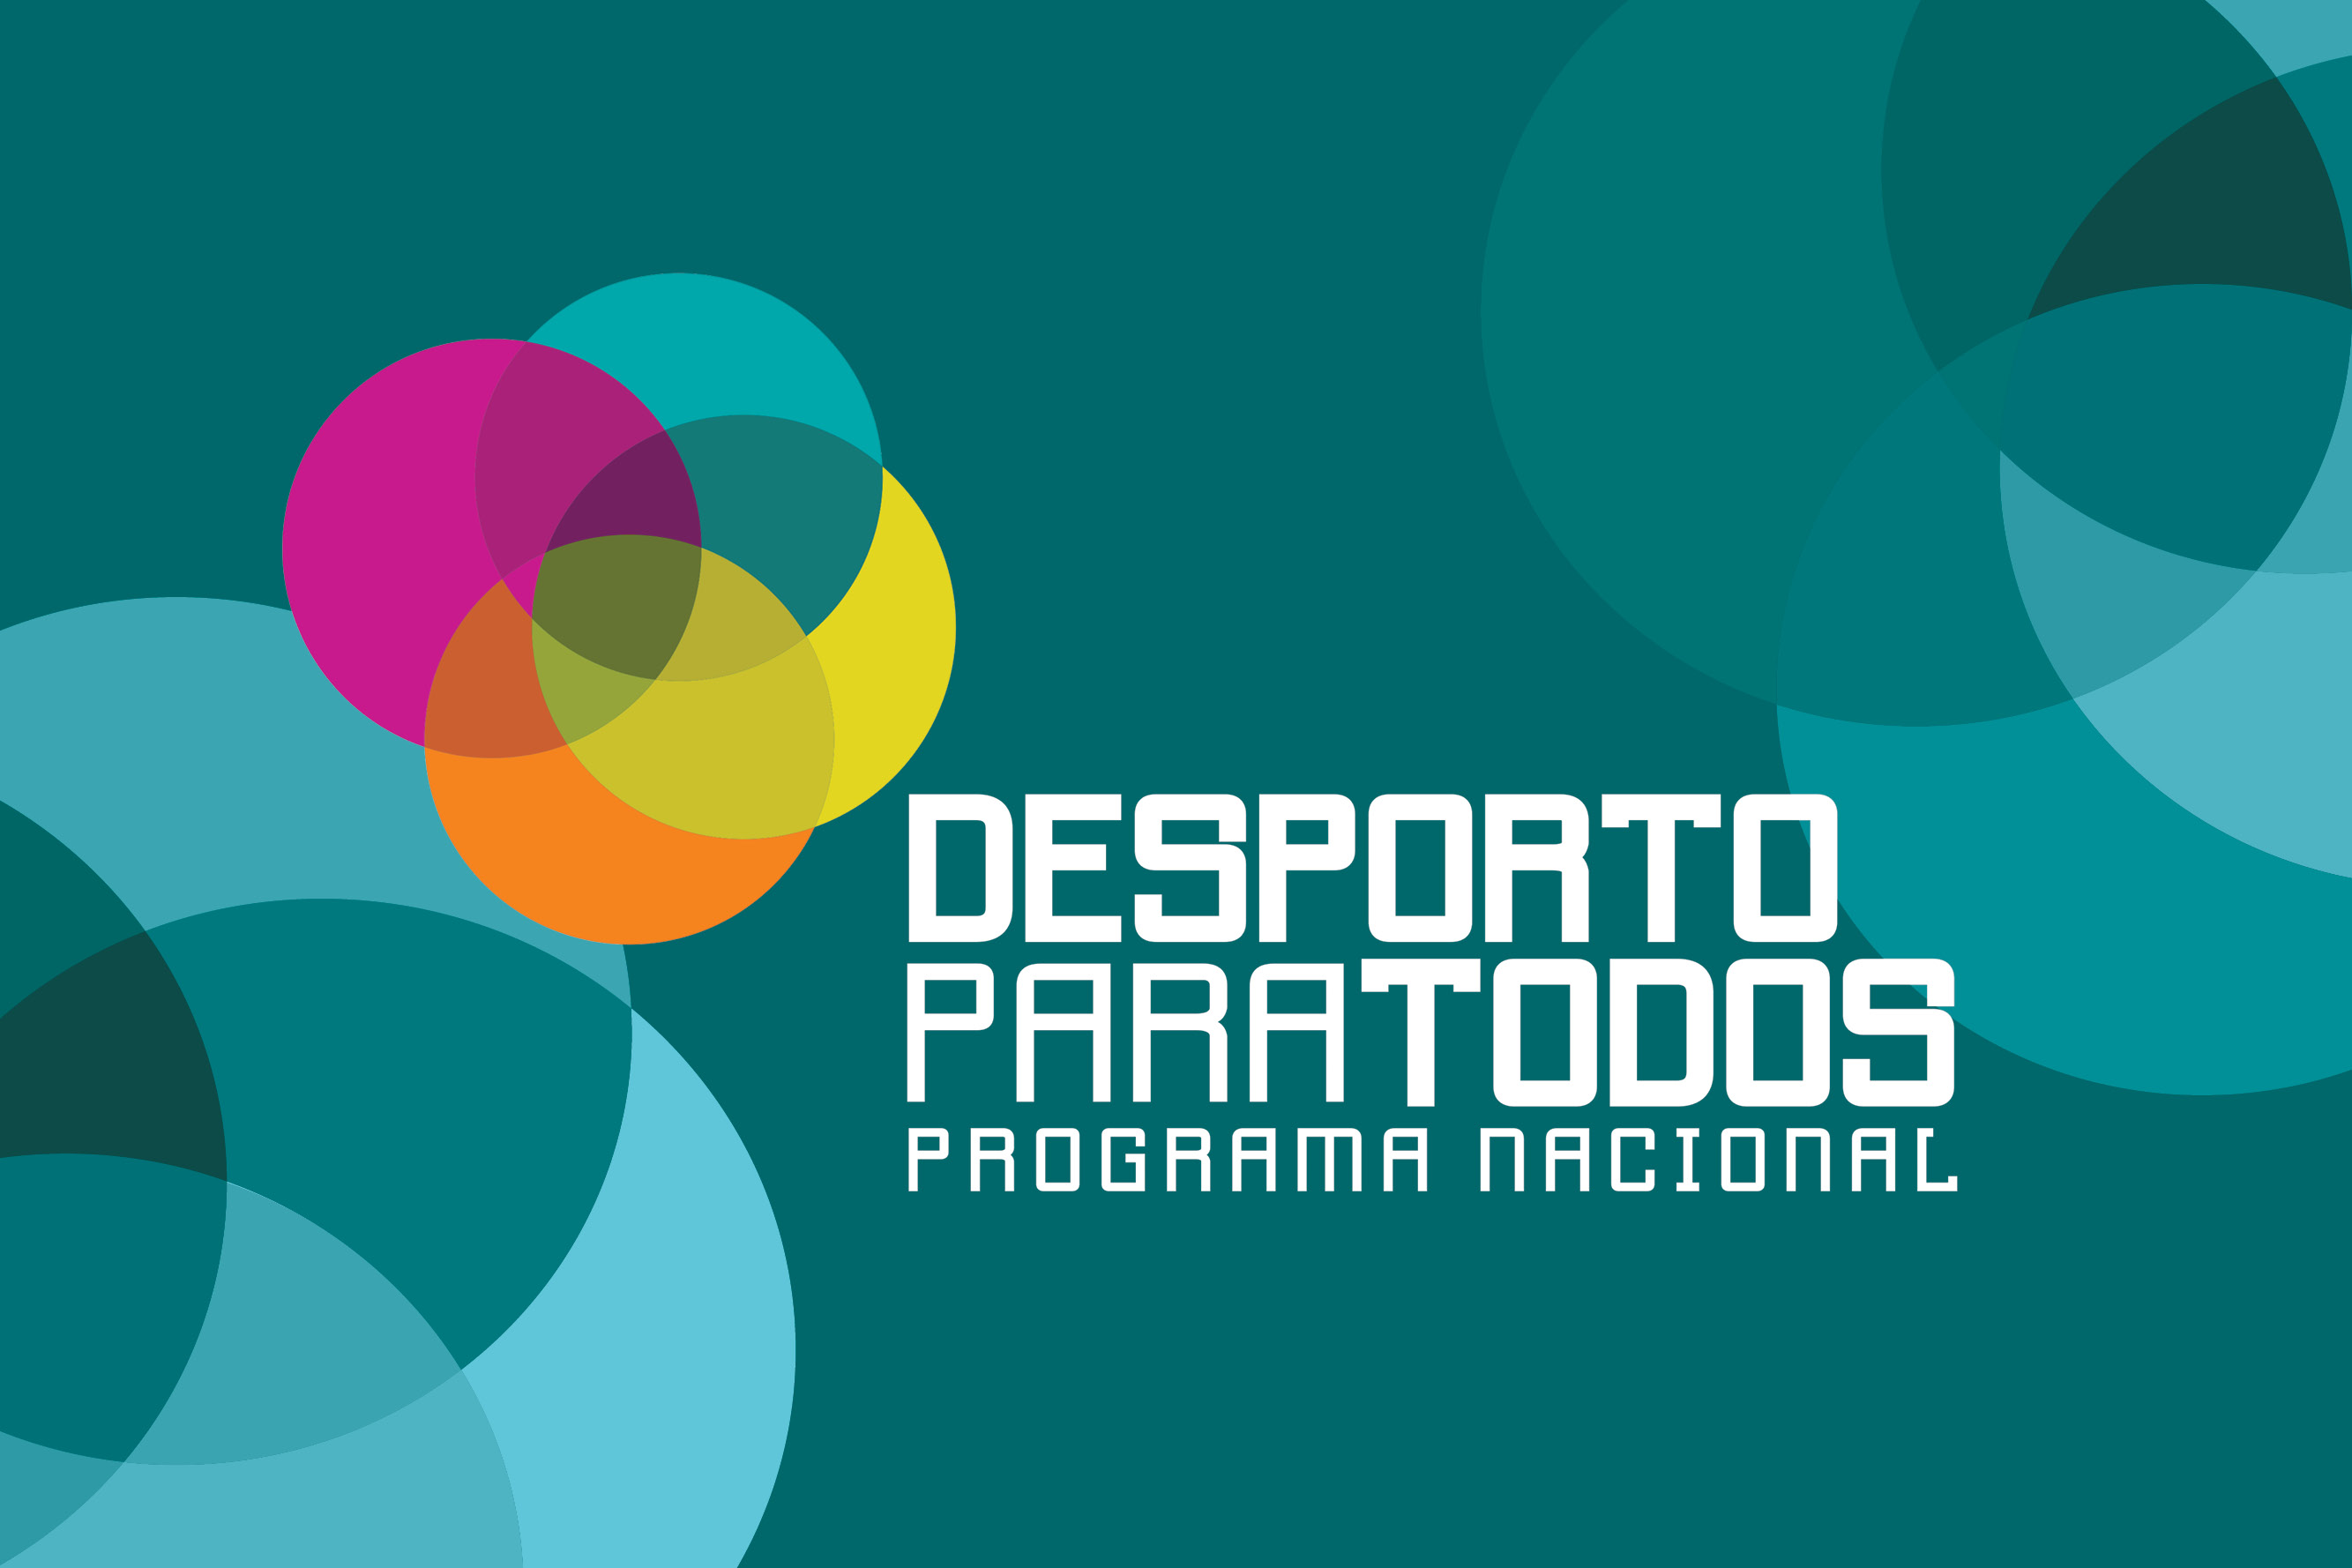 Logotipo do Programa Nacional Desporto para Todos